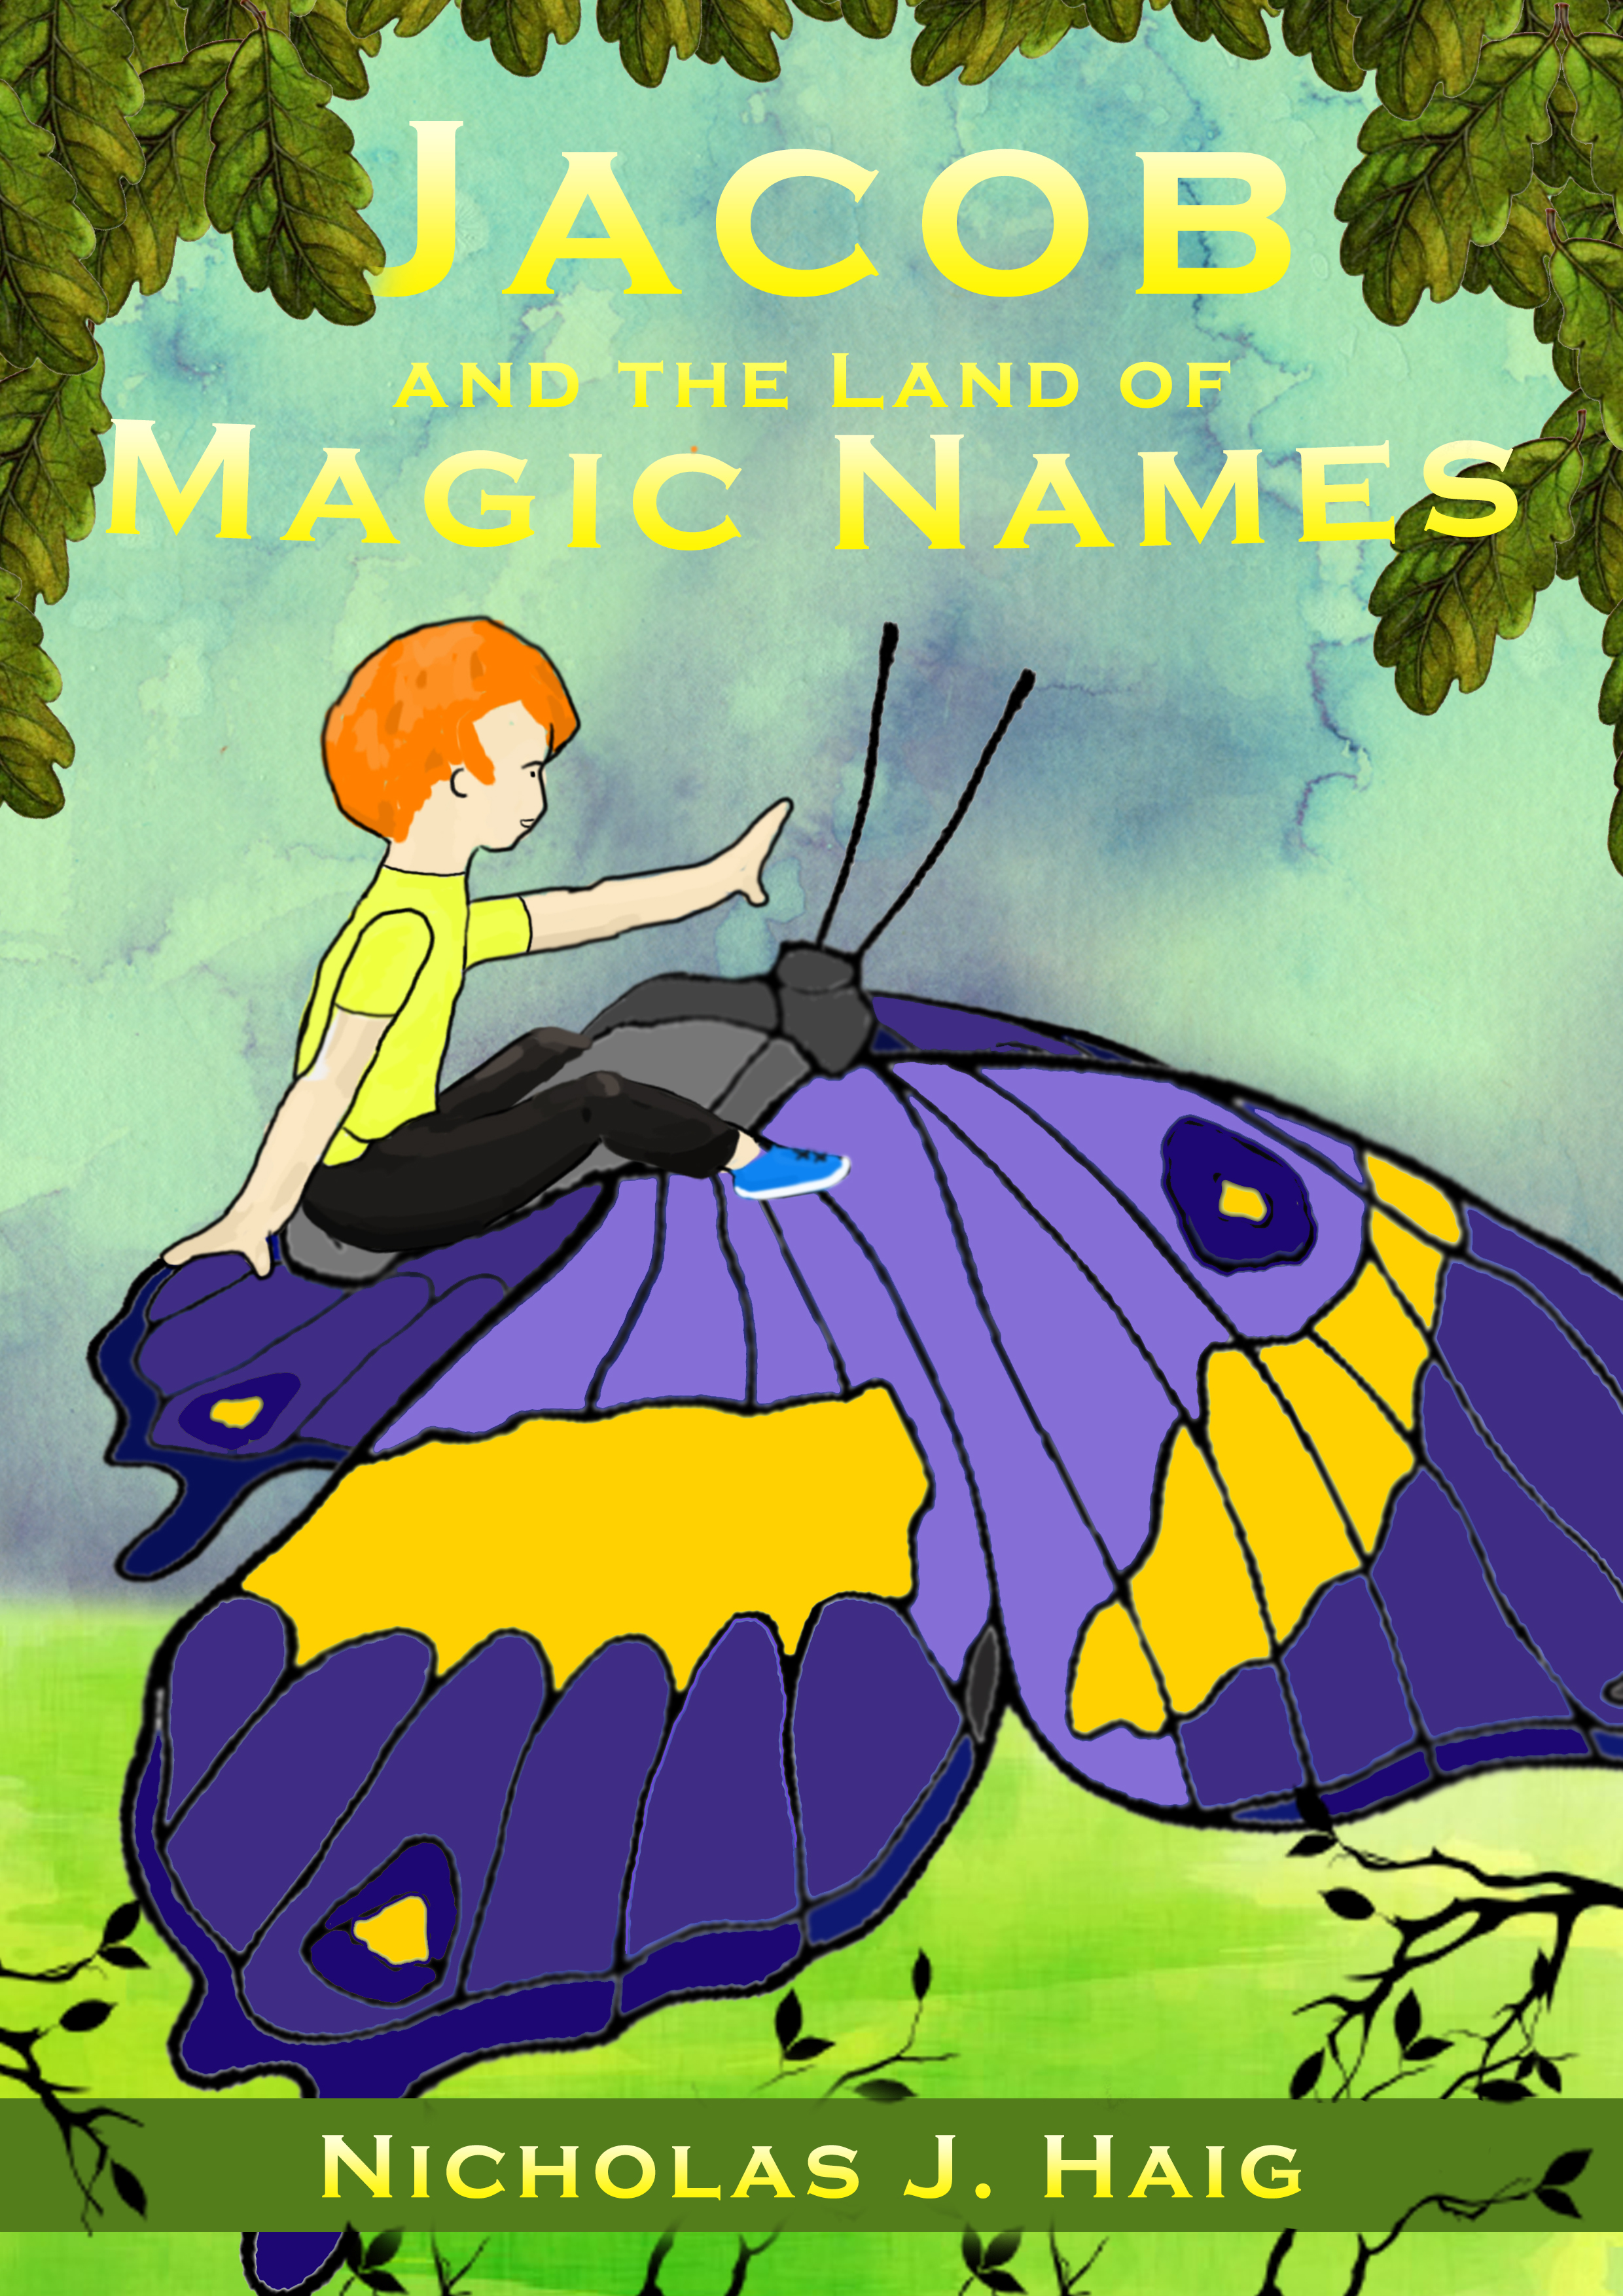 FREE: Jacob and Magic Names by Nicholas J. Haig